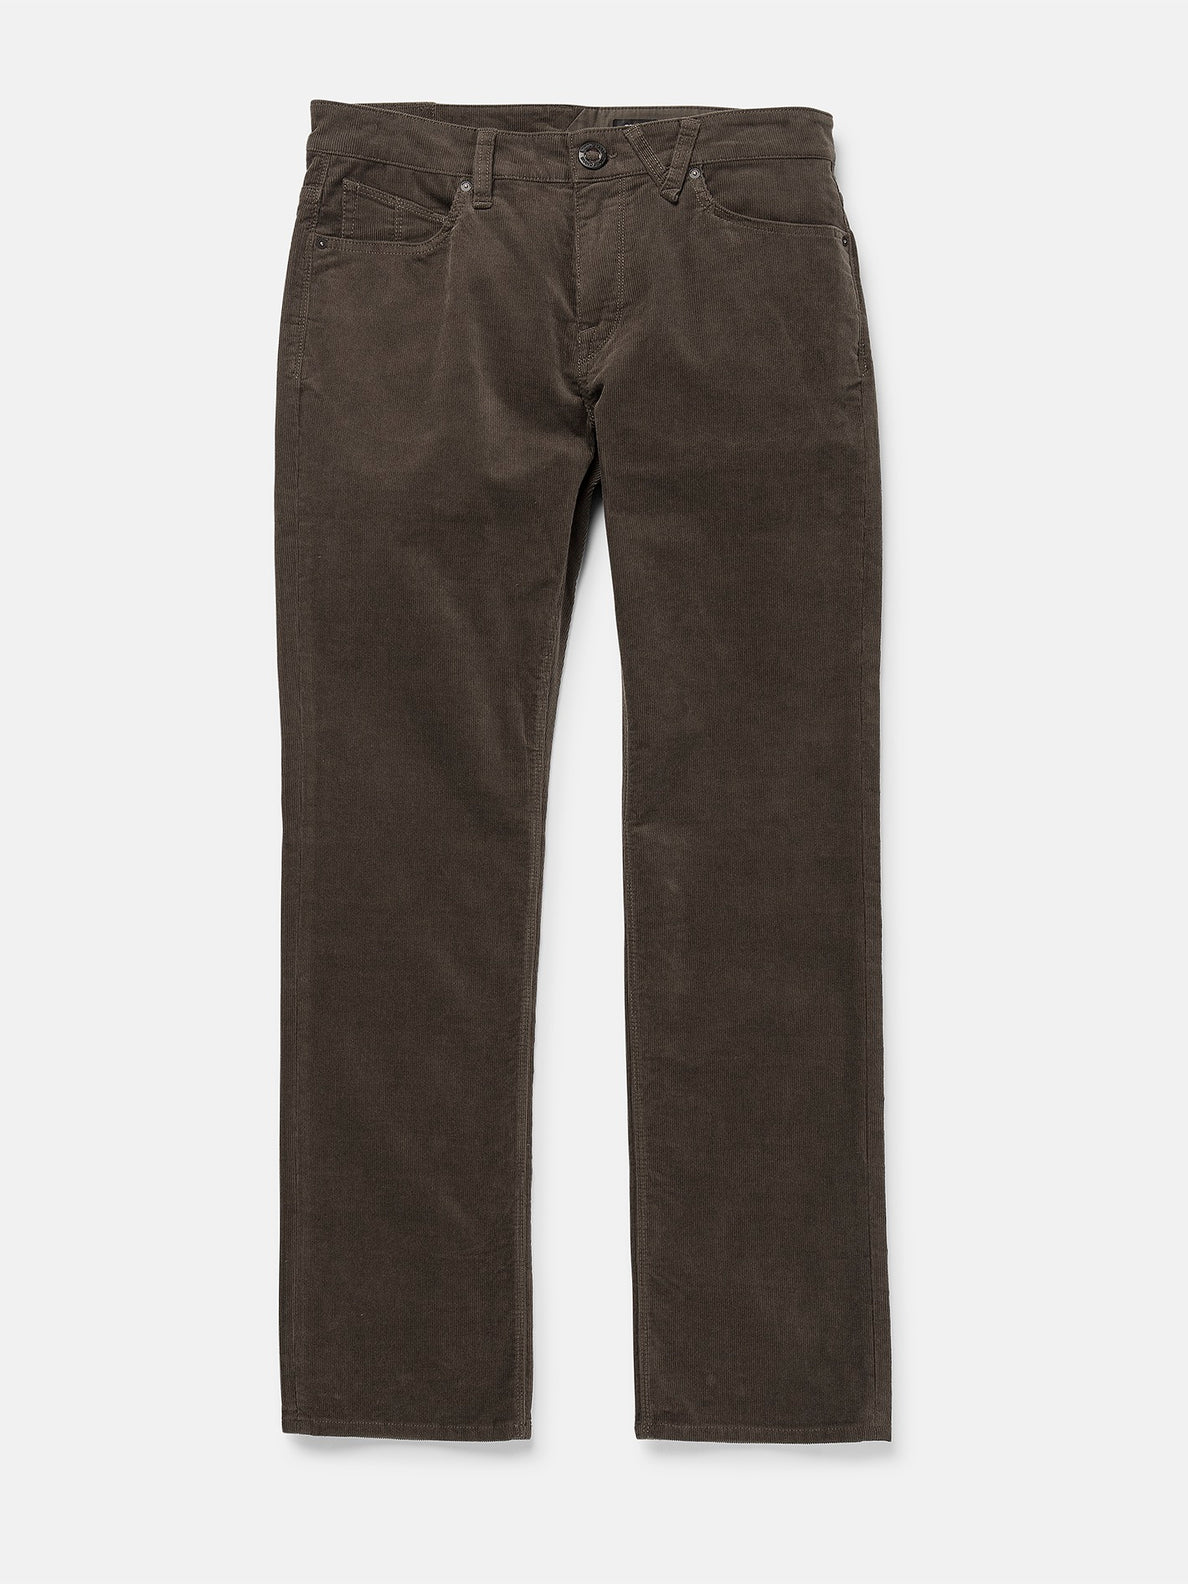 Solver Pocket Cord Modern Fit Pants - Bison – Volcom US